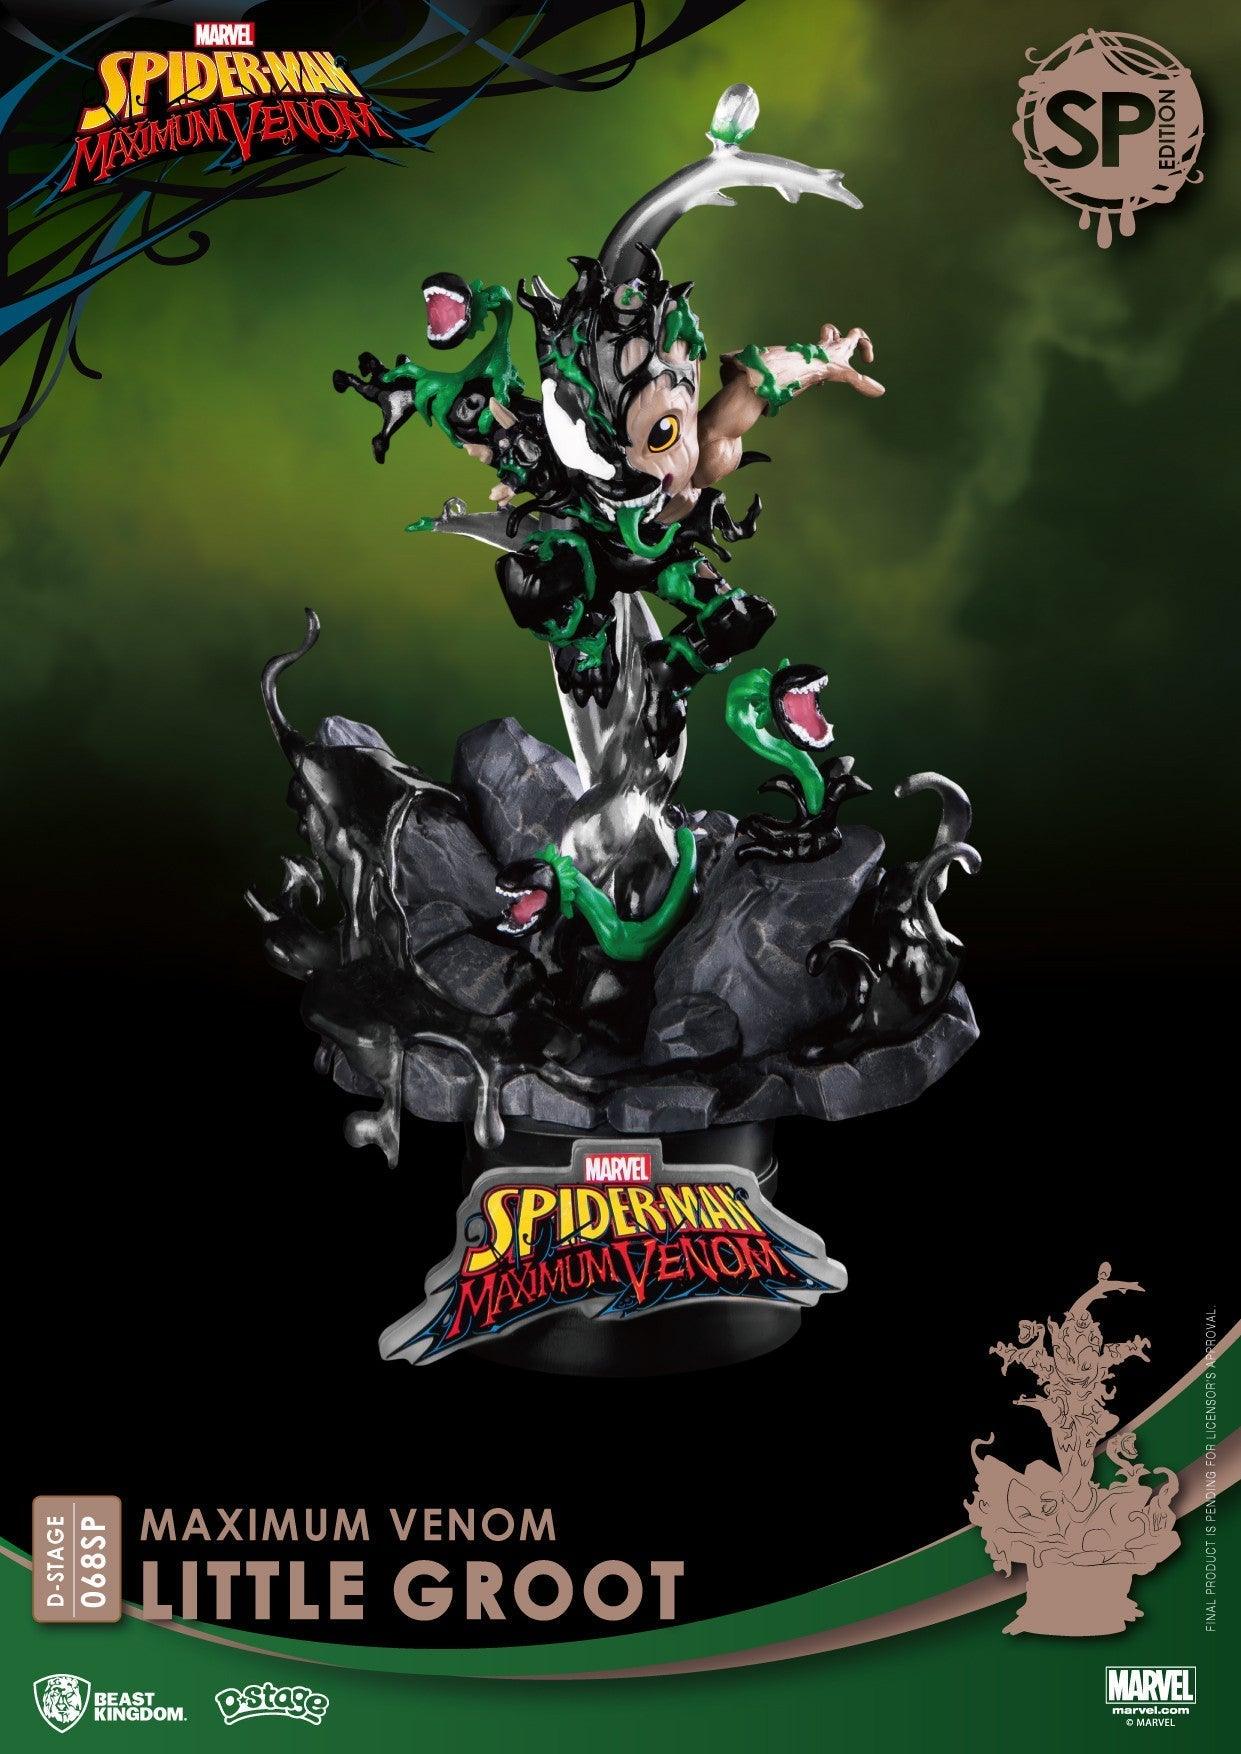 VR-93321 Beast Kingdom D Stage Maximum Venom Little Groot Special Edition - Beast Kingdom - Titan Pop Culture